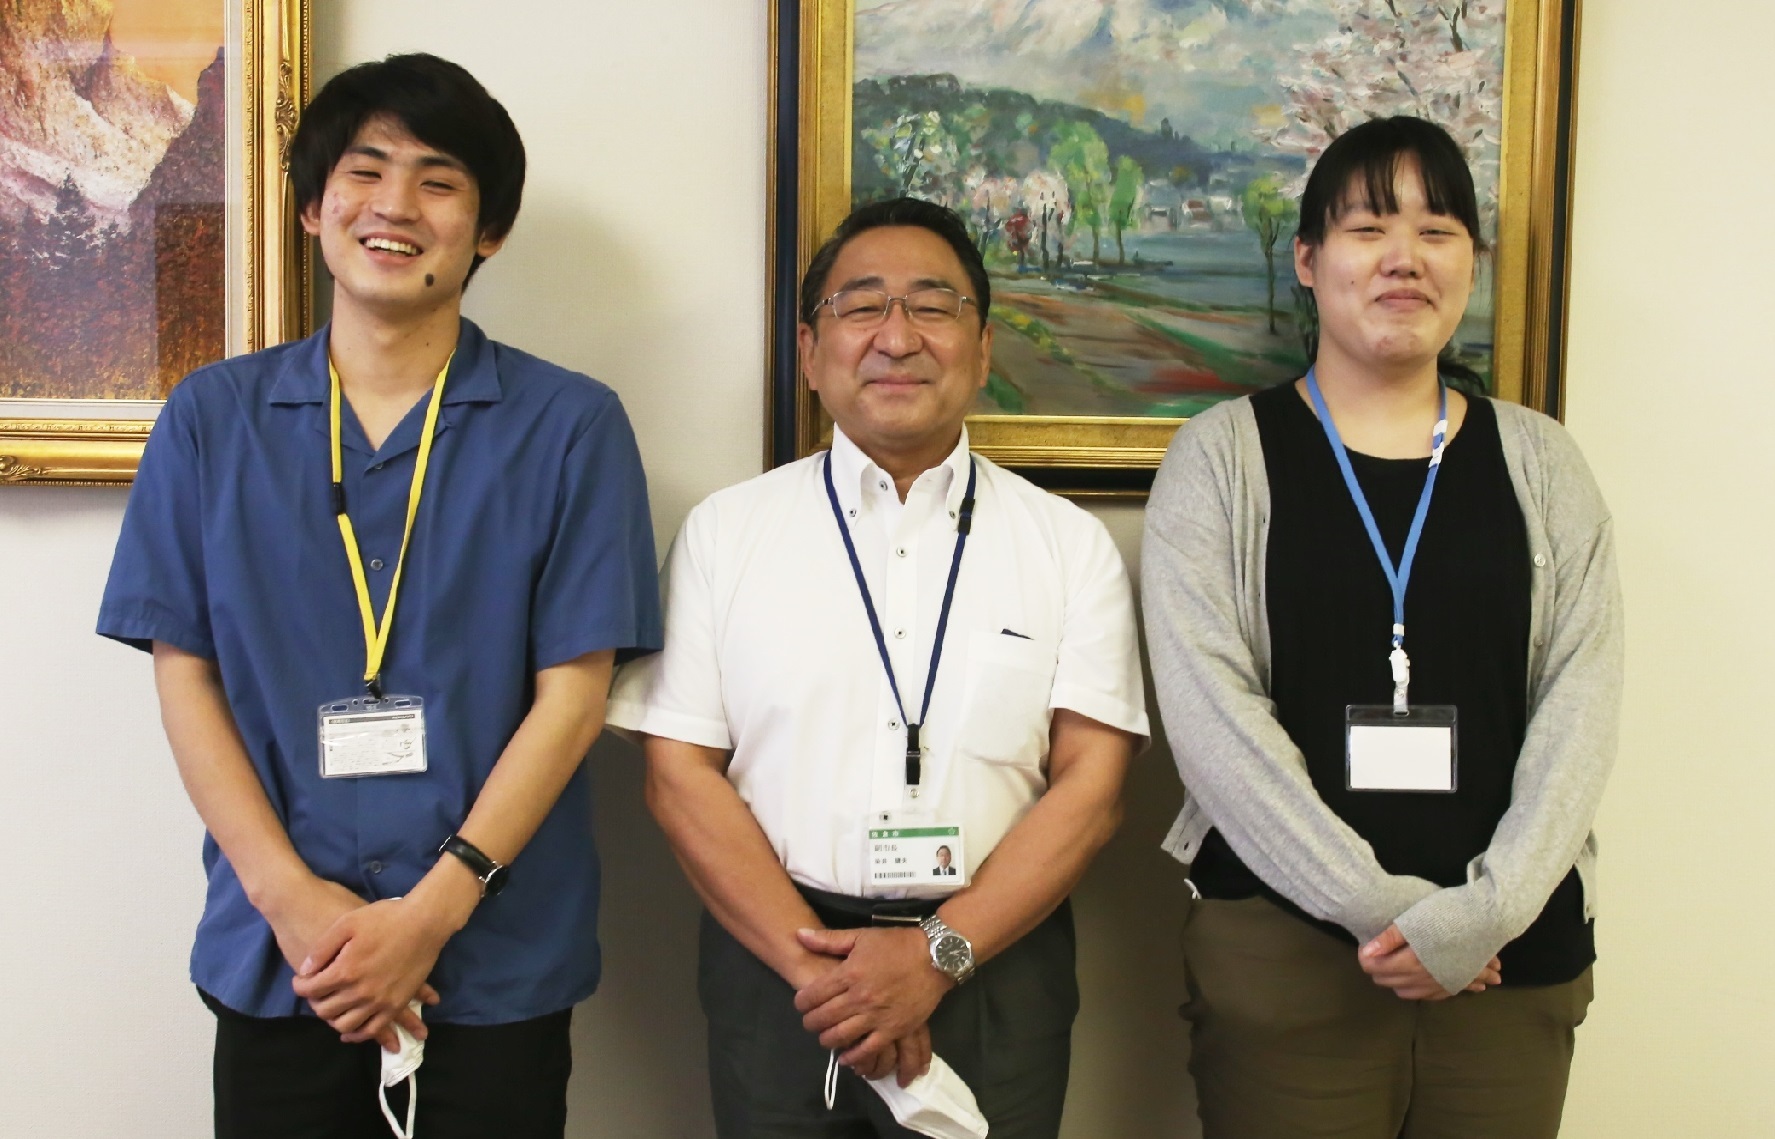 大学生インターン2名と佐倉市副市長の染井さんが笑顔で並んで写っている写真